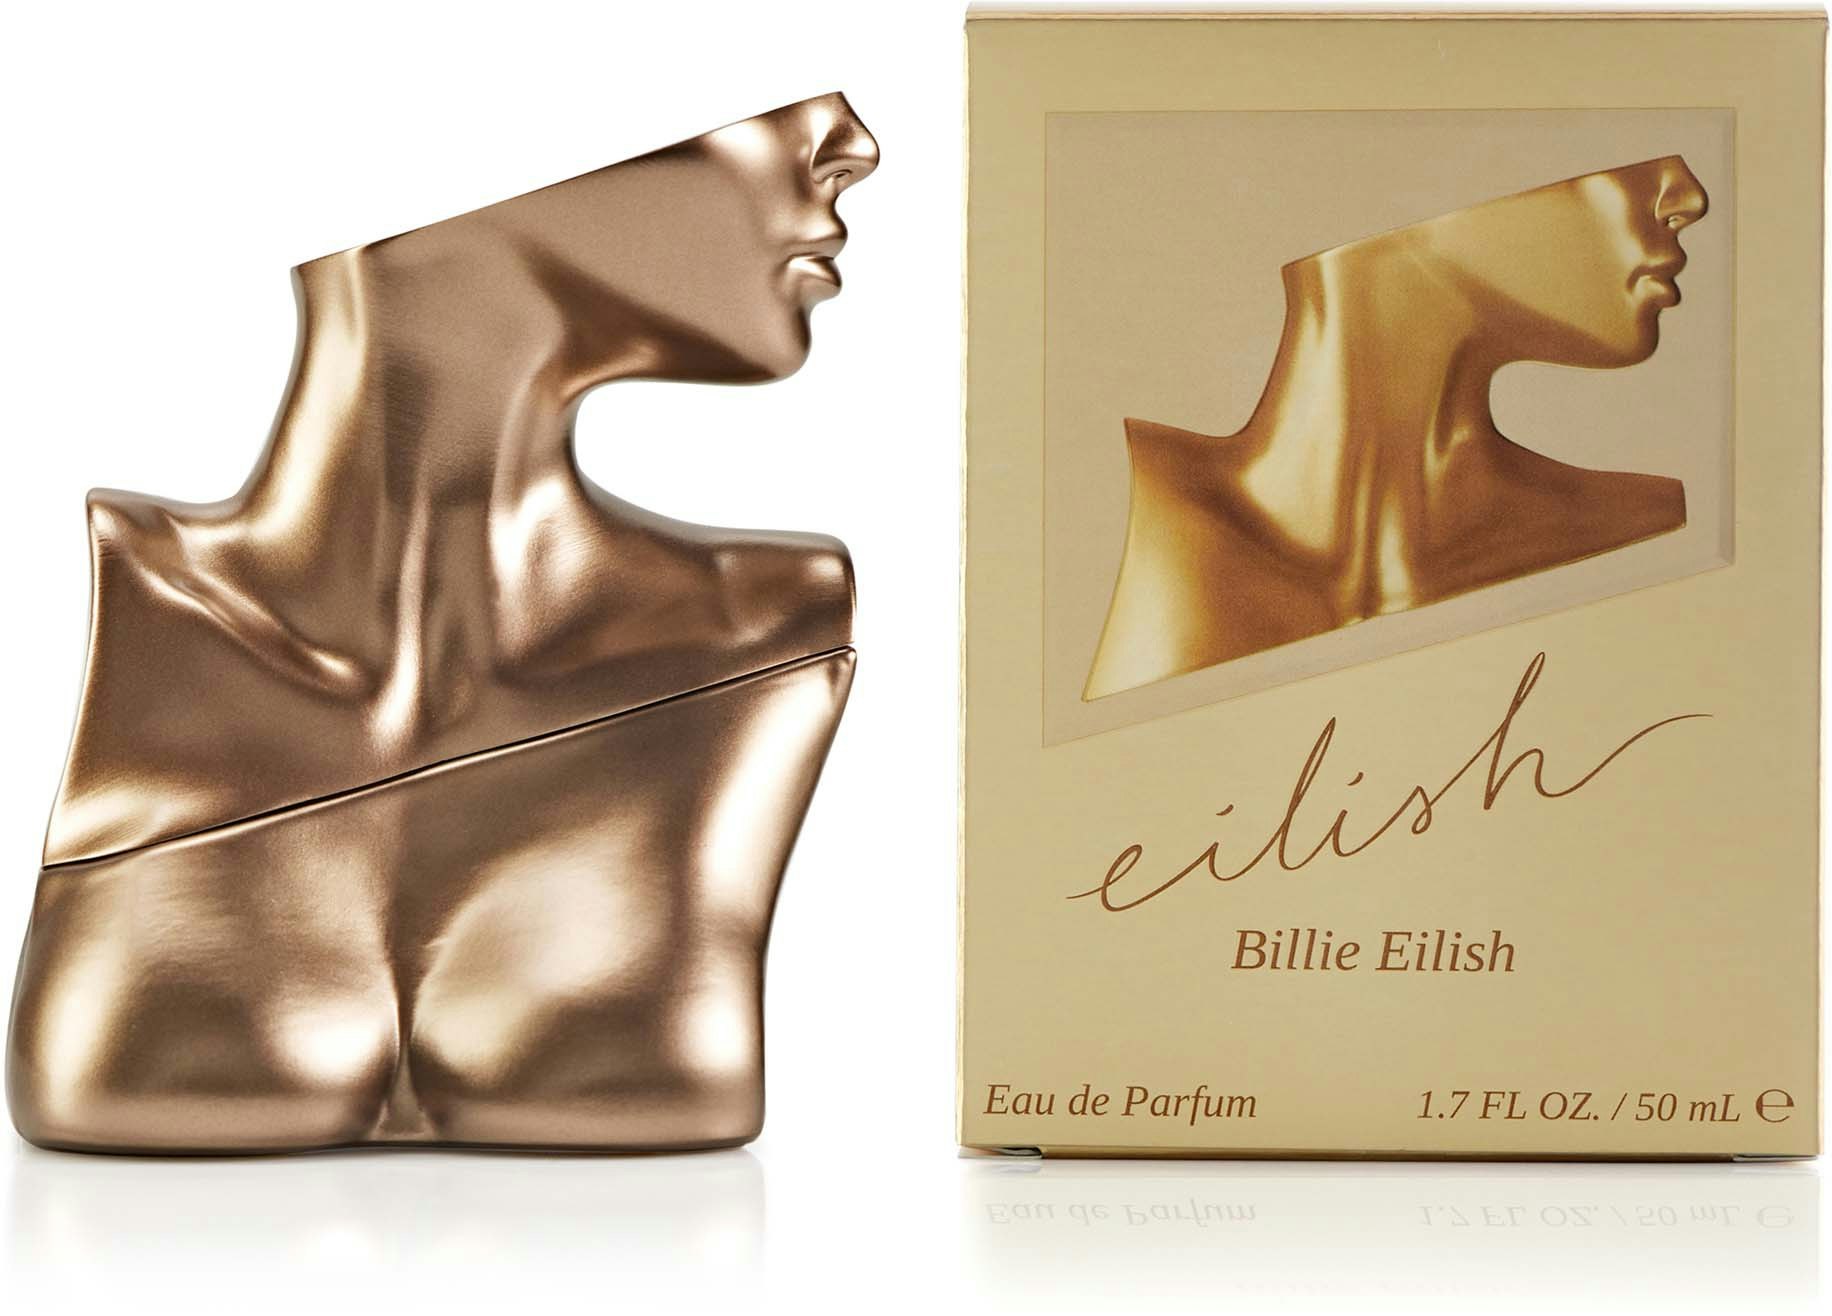 Billie Eilish Eilish Eau de Parfum